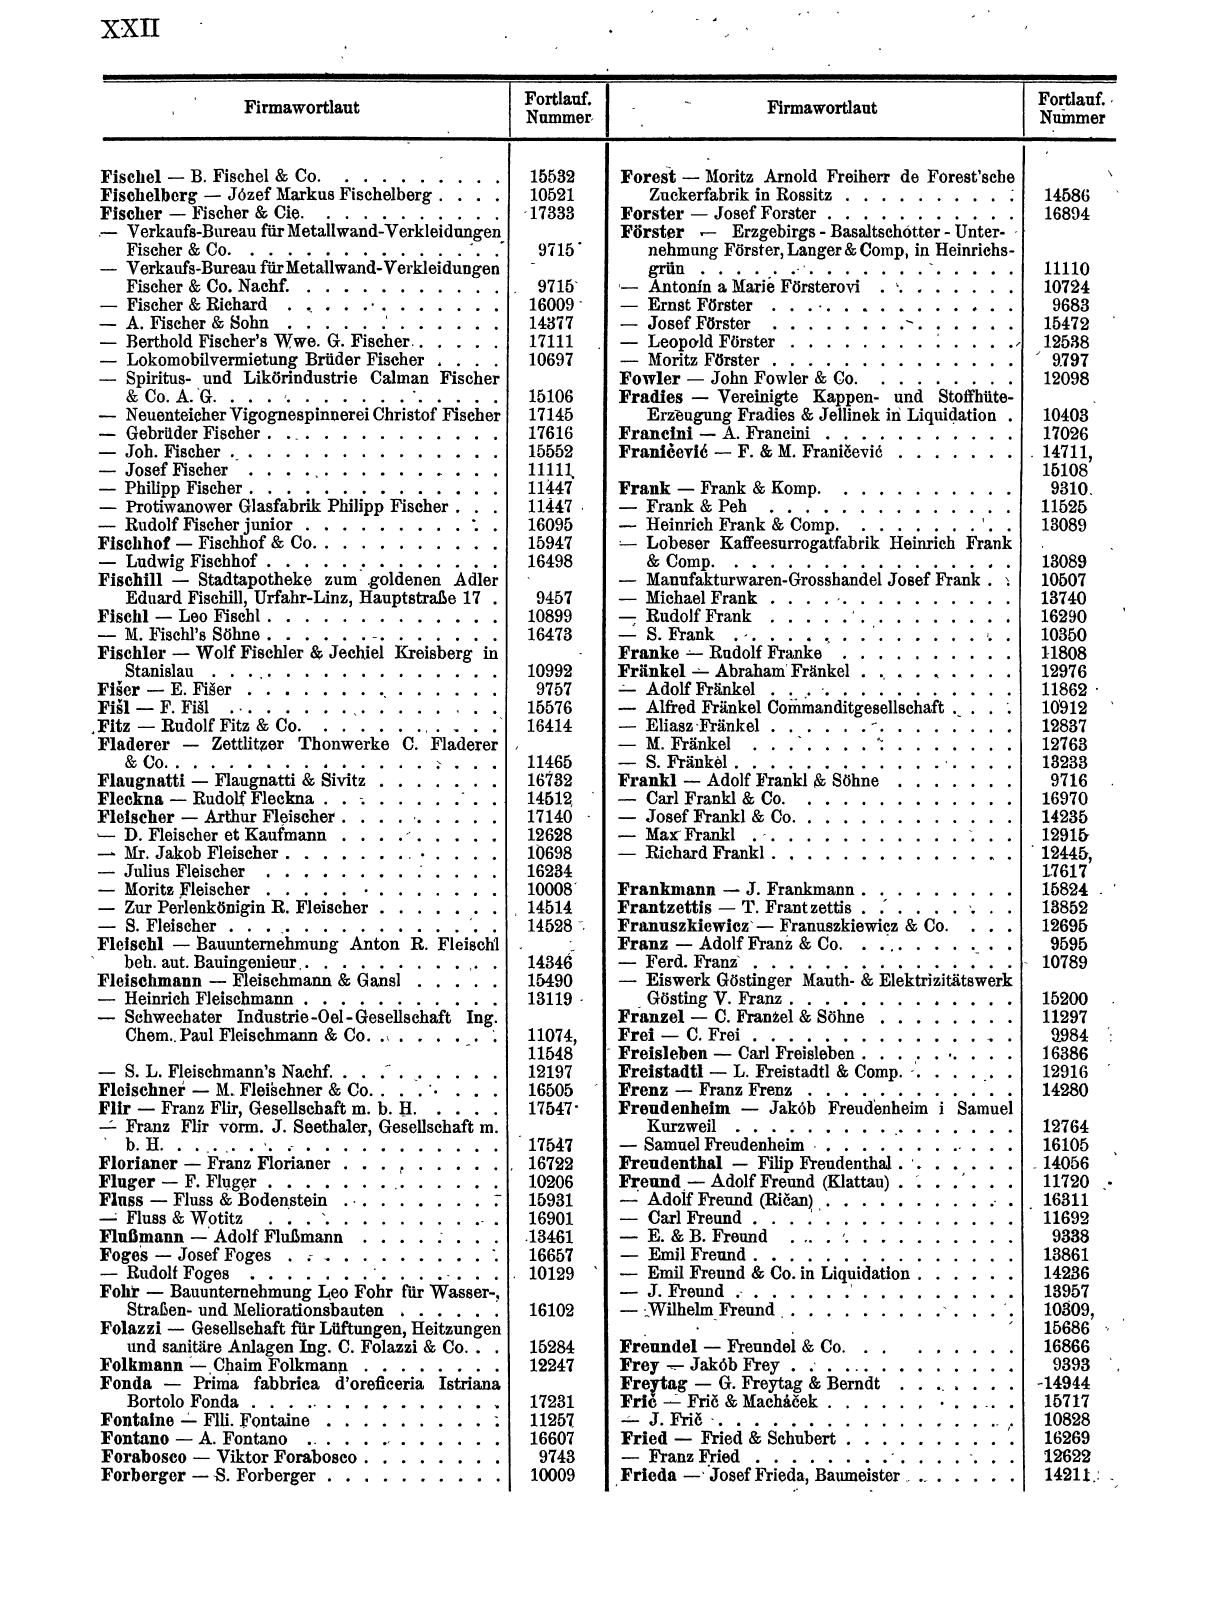 Zentralblatt für die Eintragungen in das Handelsregister 1913, Teil 2 - Seite 26